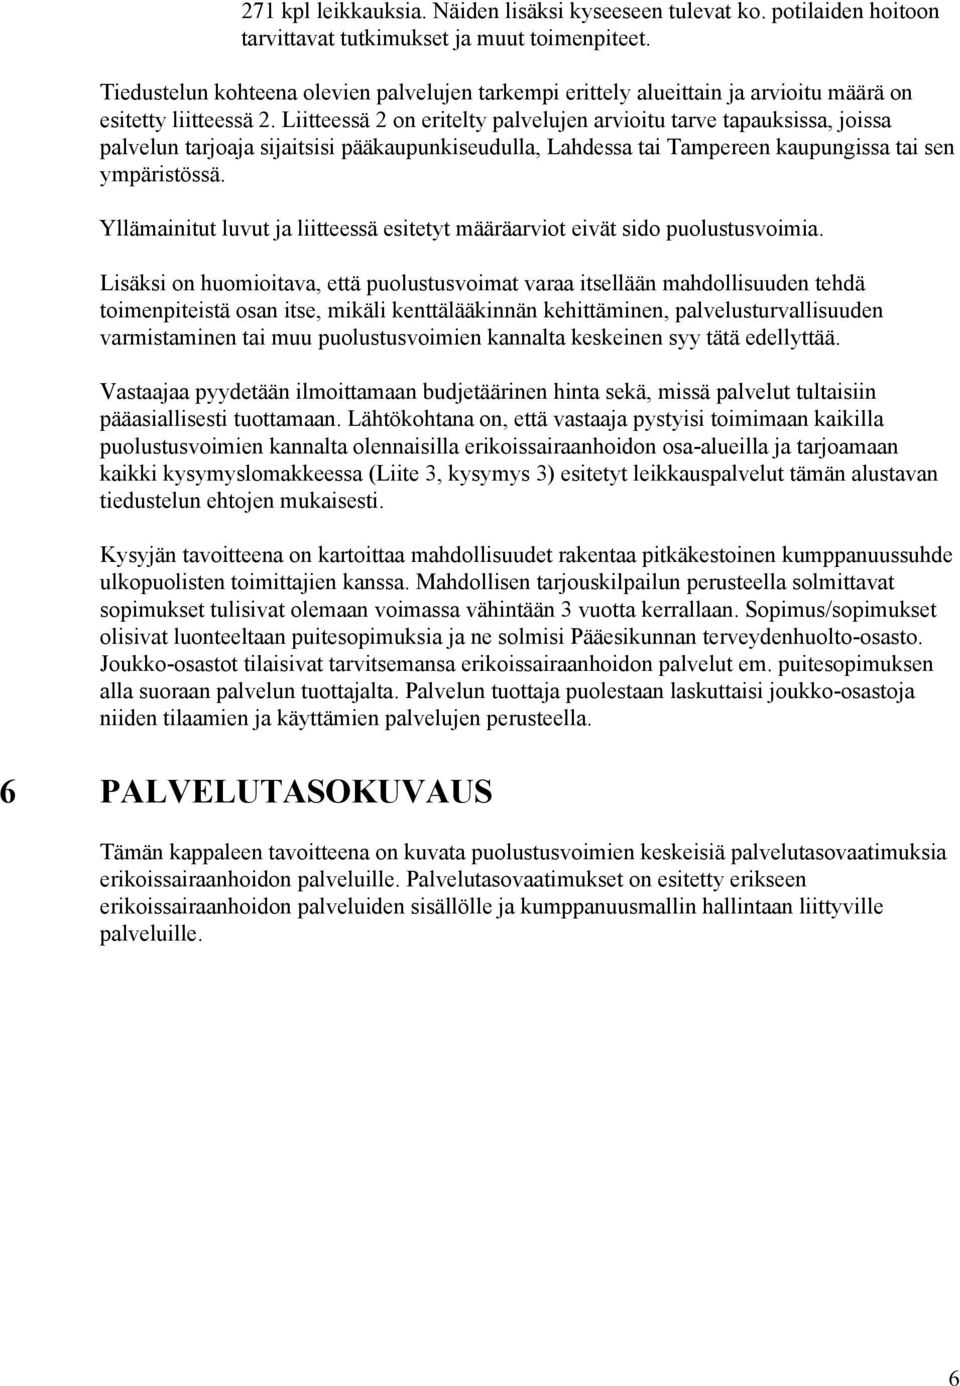 Liitteessä 2 on eritelty palvelujen arvioitu tarve tapauksissa, joissa palvelun tarjoaja sijaitsisi pääkaupunkiseudulla, Lahdessa tai Tampereen kaupungissa tai sen ympäristössä.